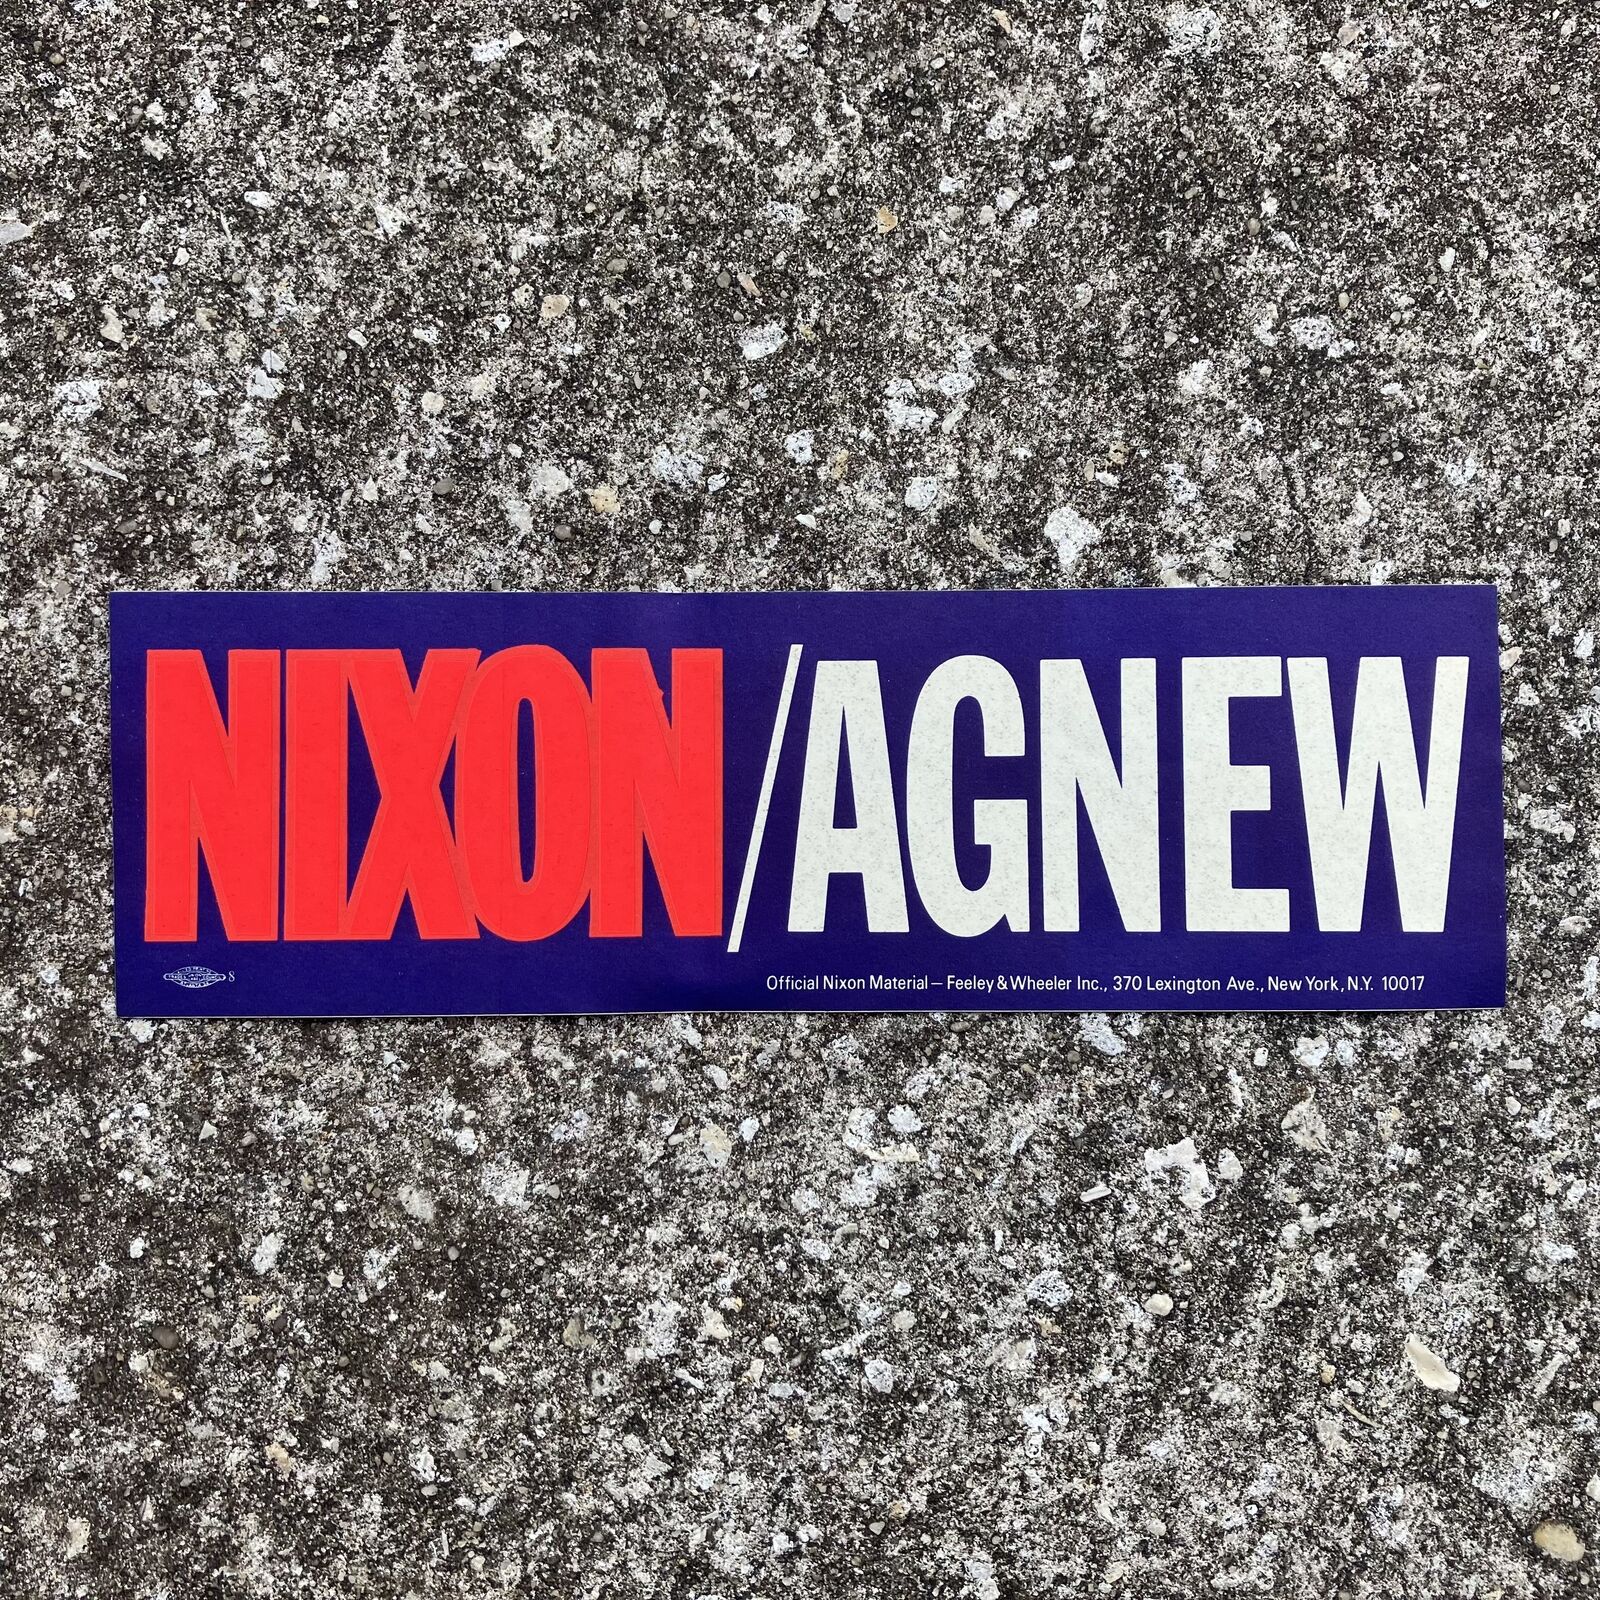 1968 Nixon-Agnew Bumper Sticker Deadstock new condition